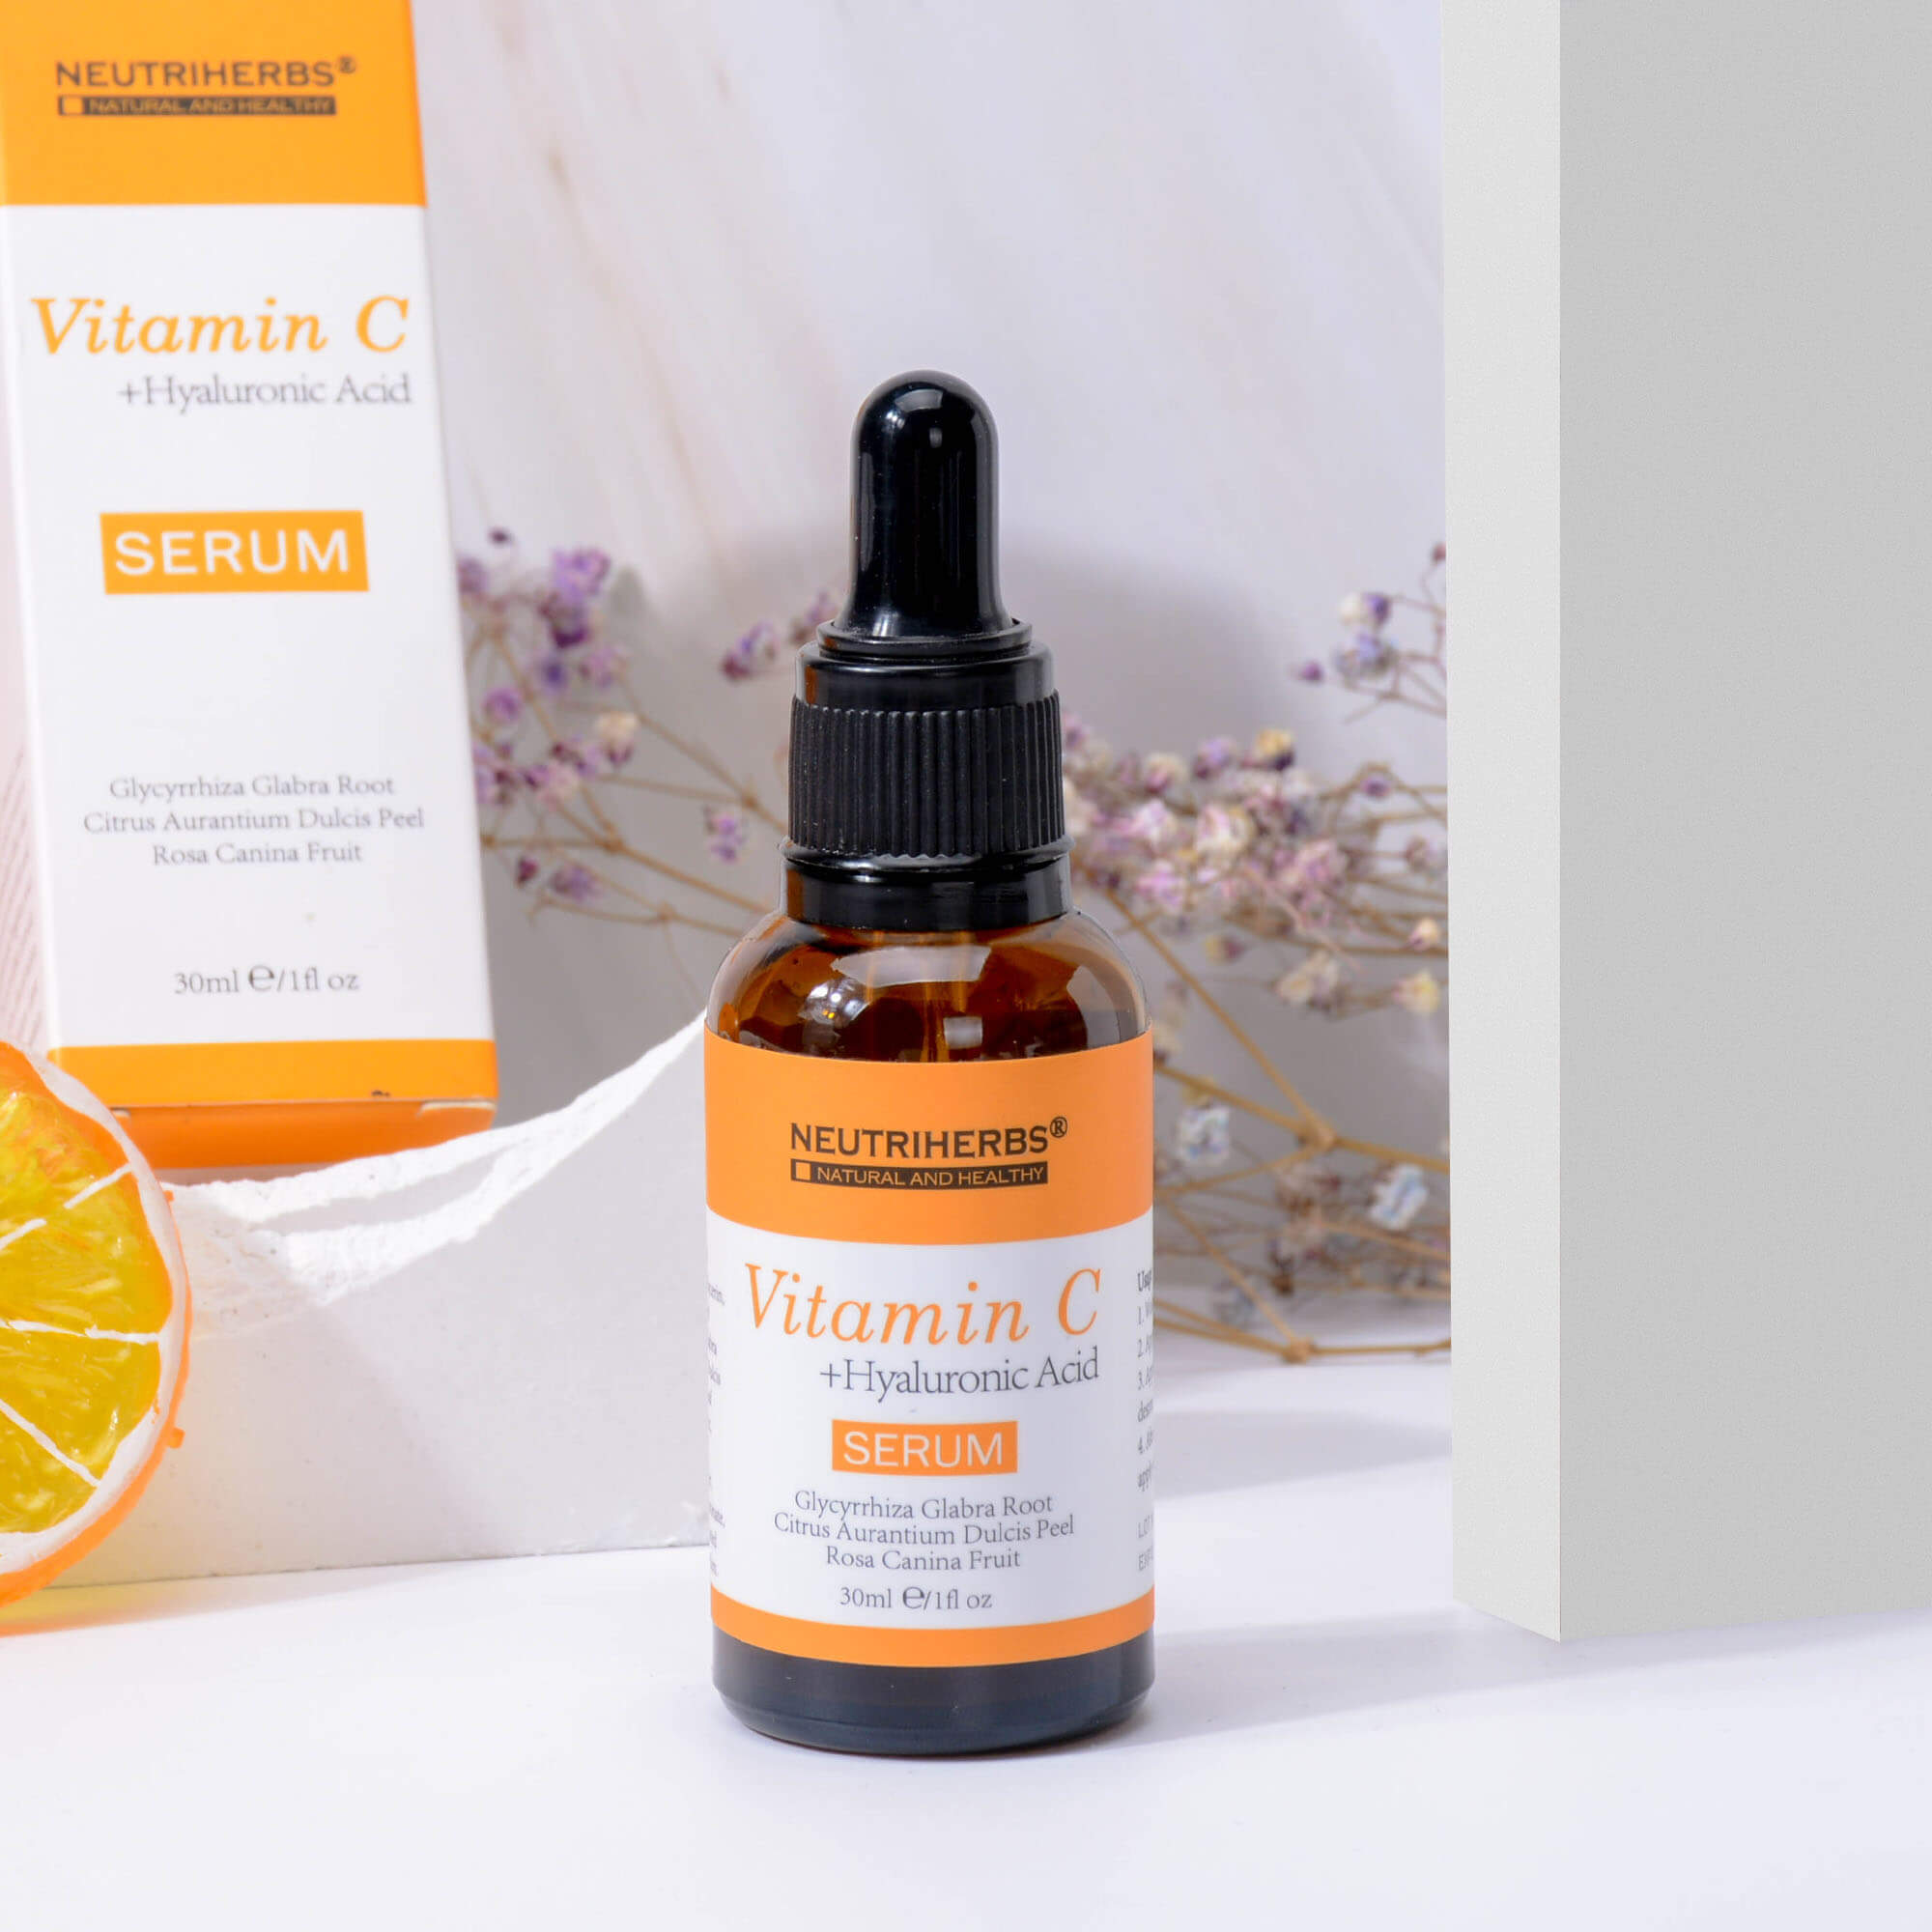 vitamin c serum is suitable for brightening skin